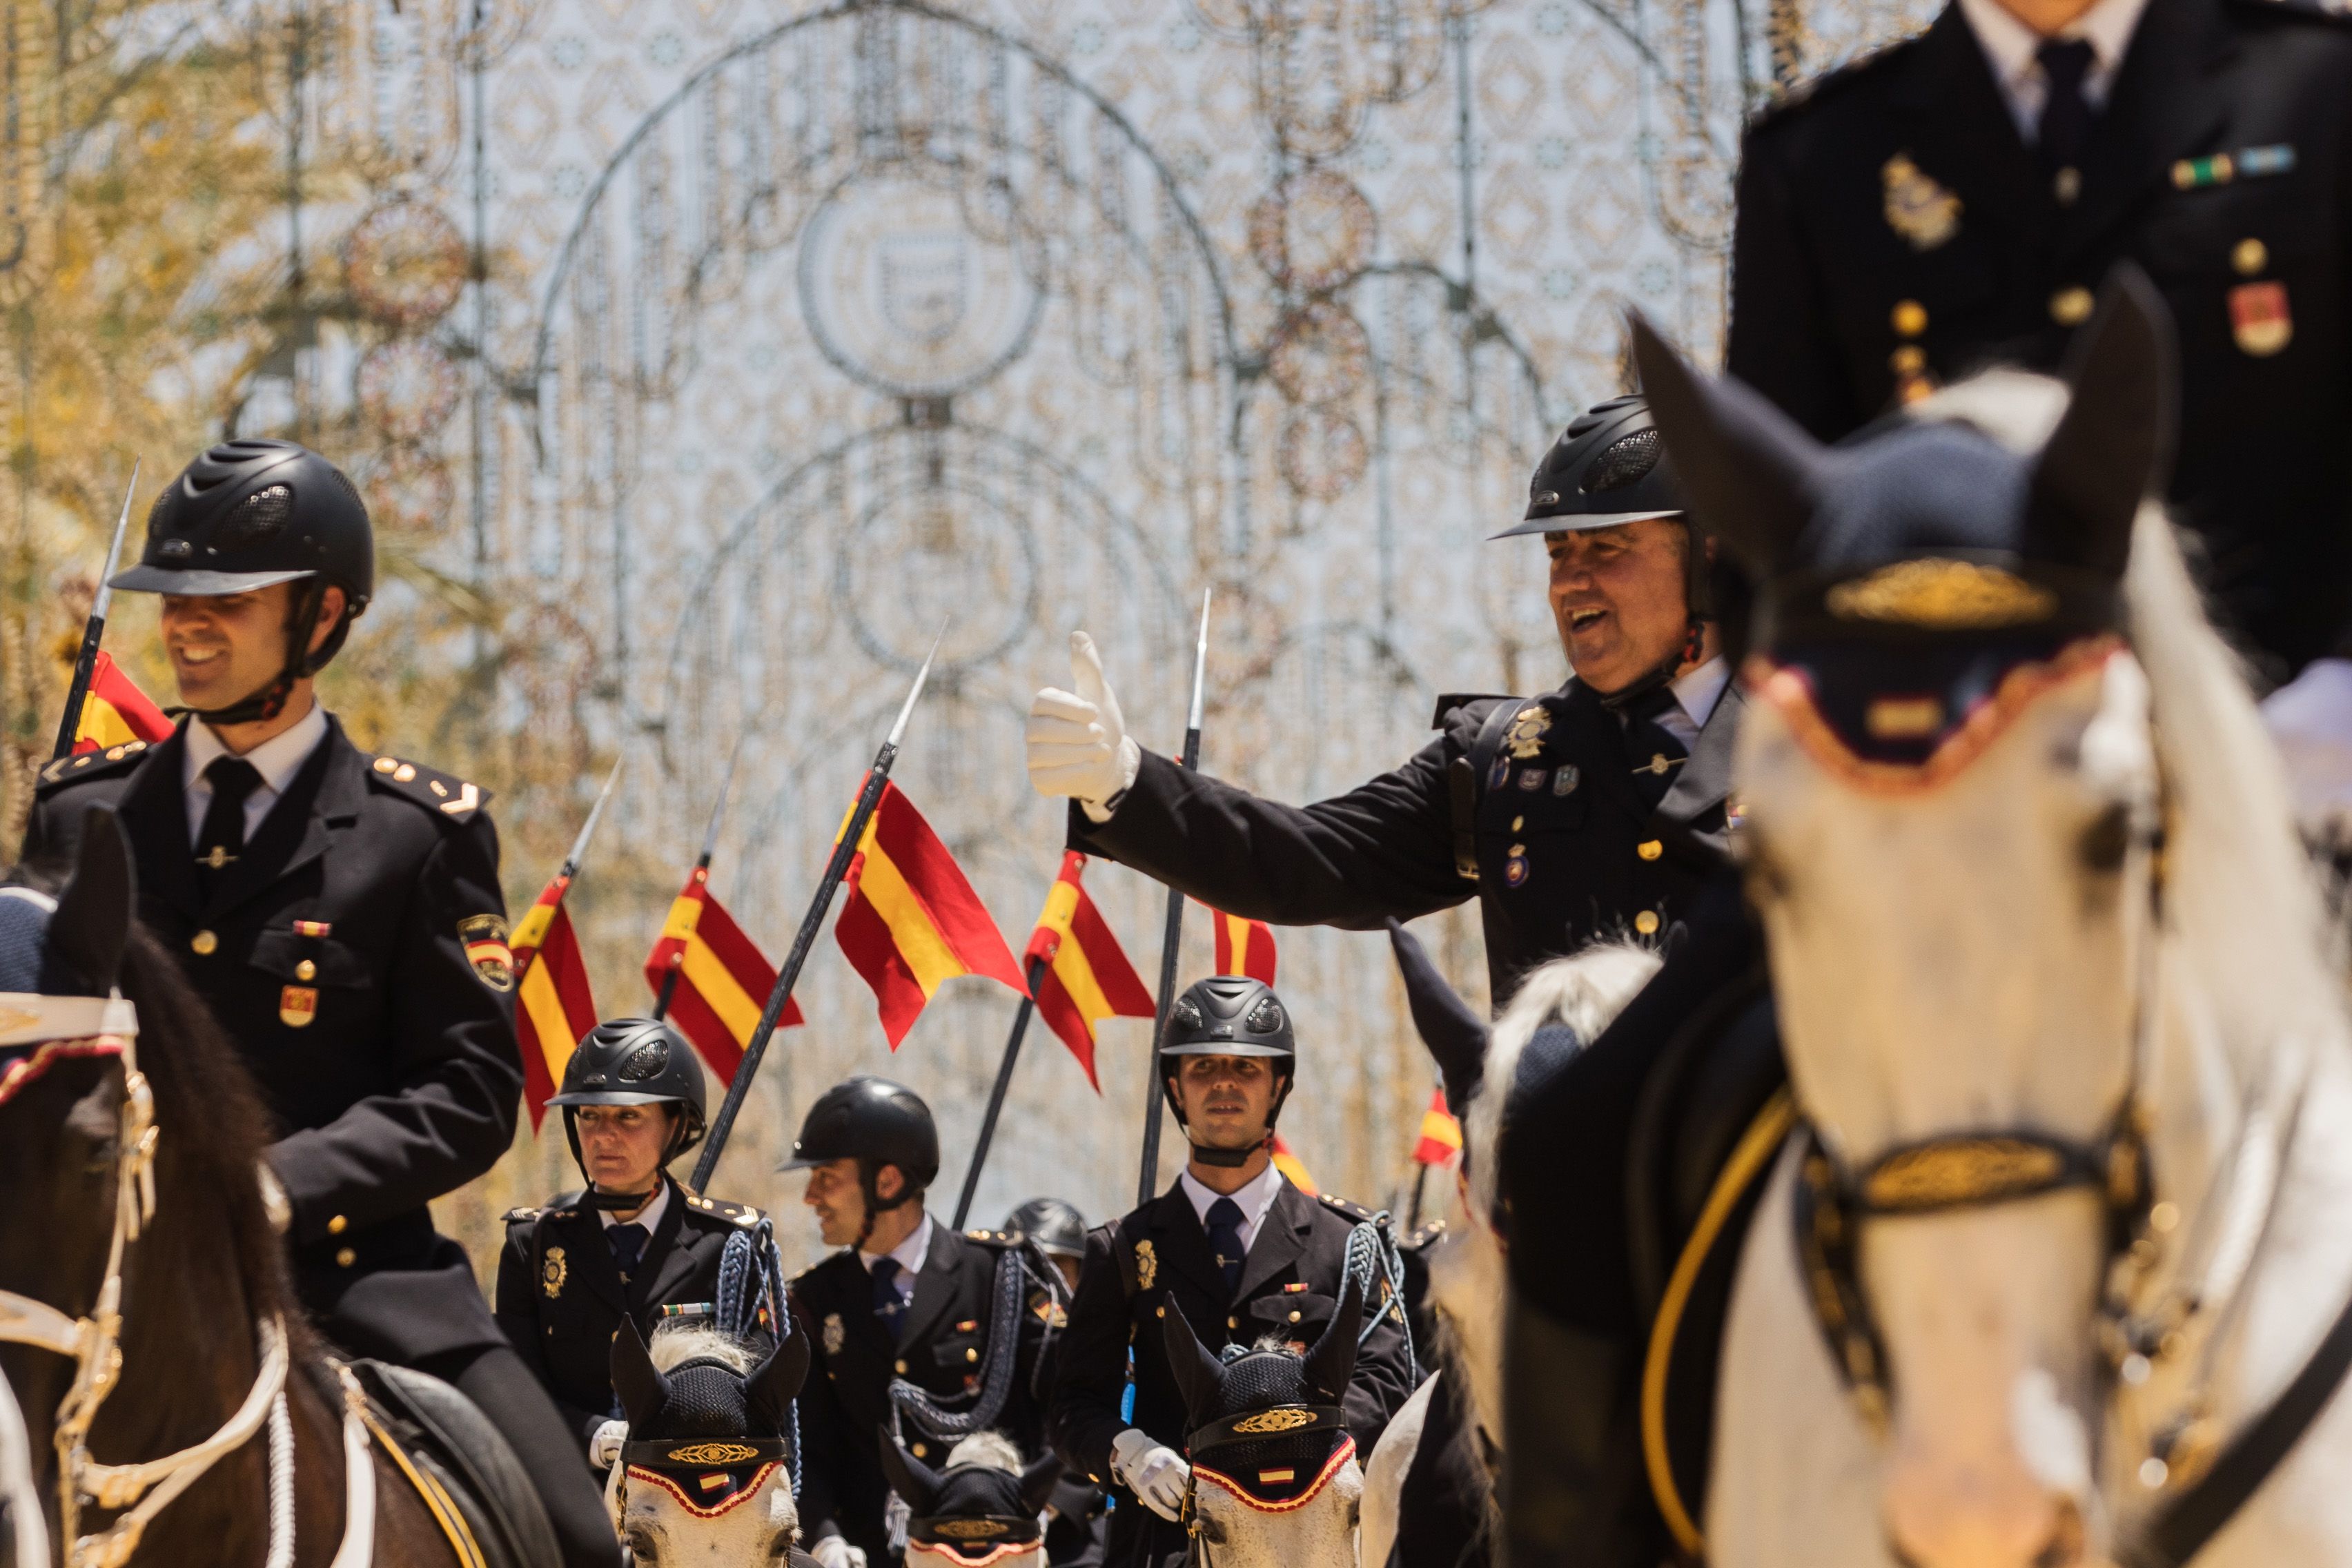 La Unidad Caballería de la Policía Nacional, Caballo de Oro 2021, desfilando por el Real de la Feria